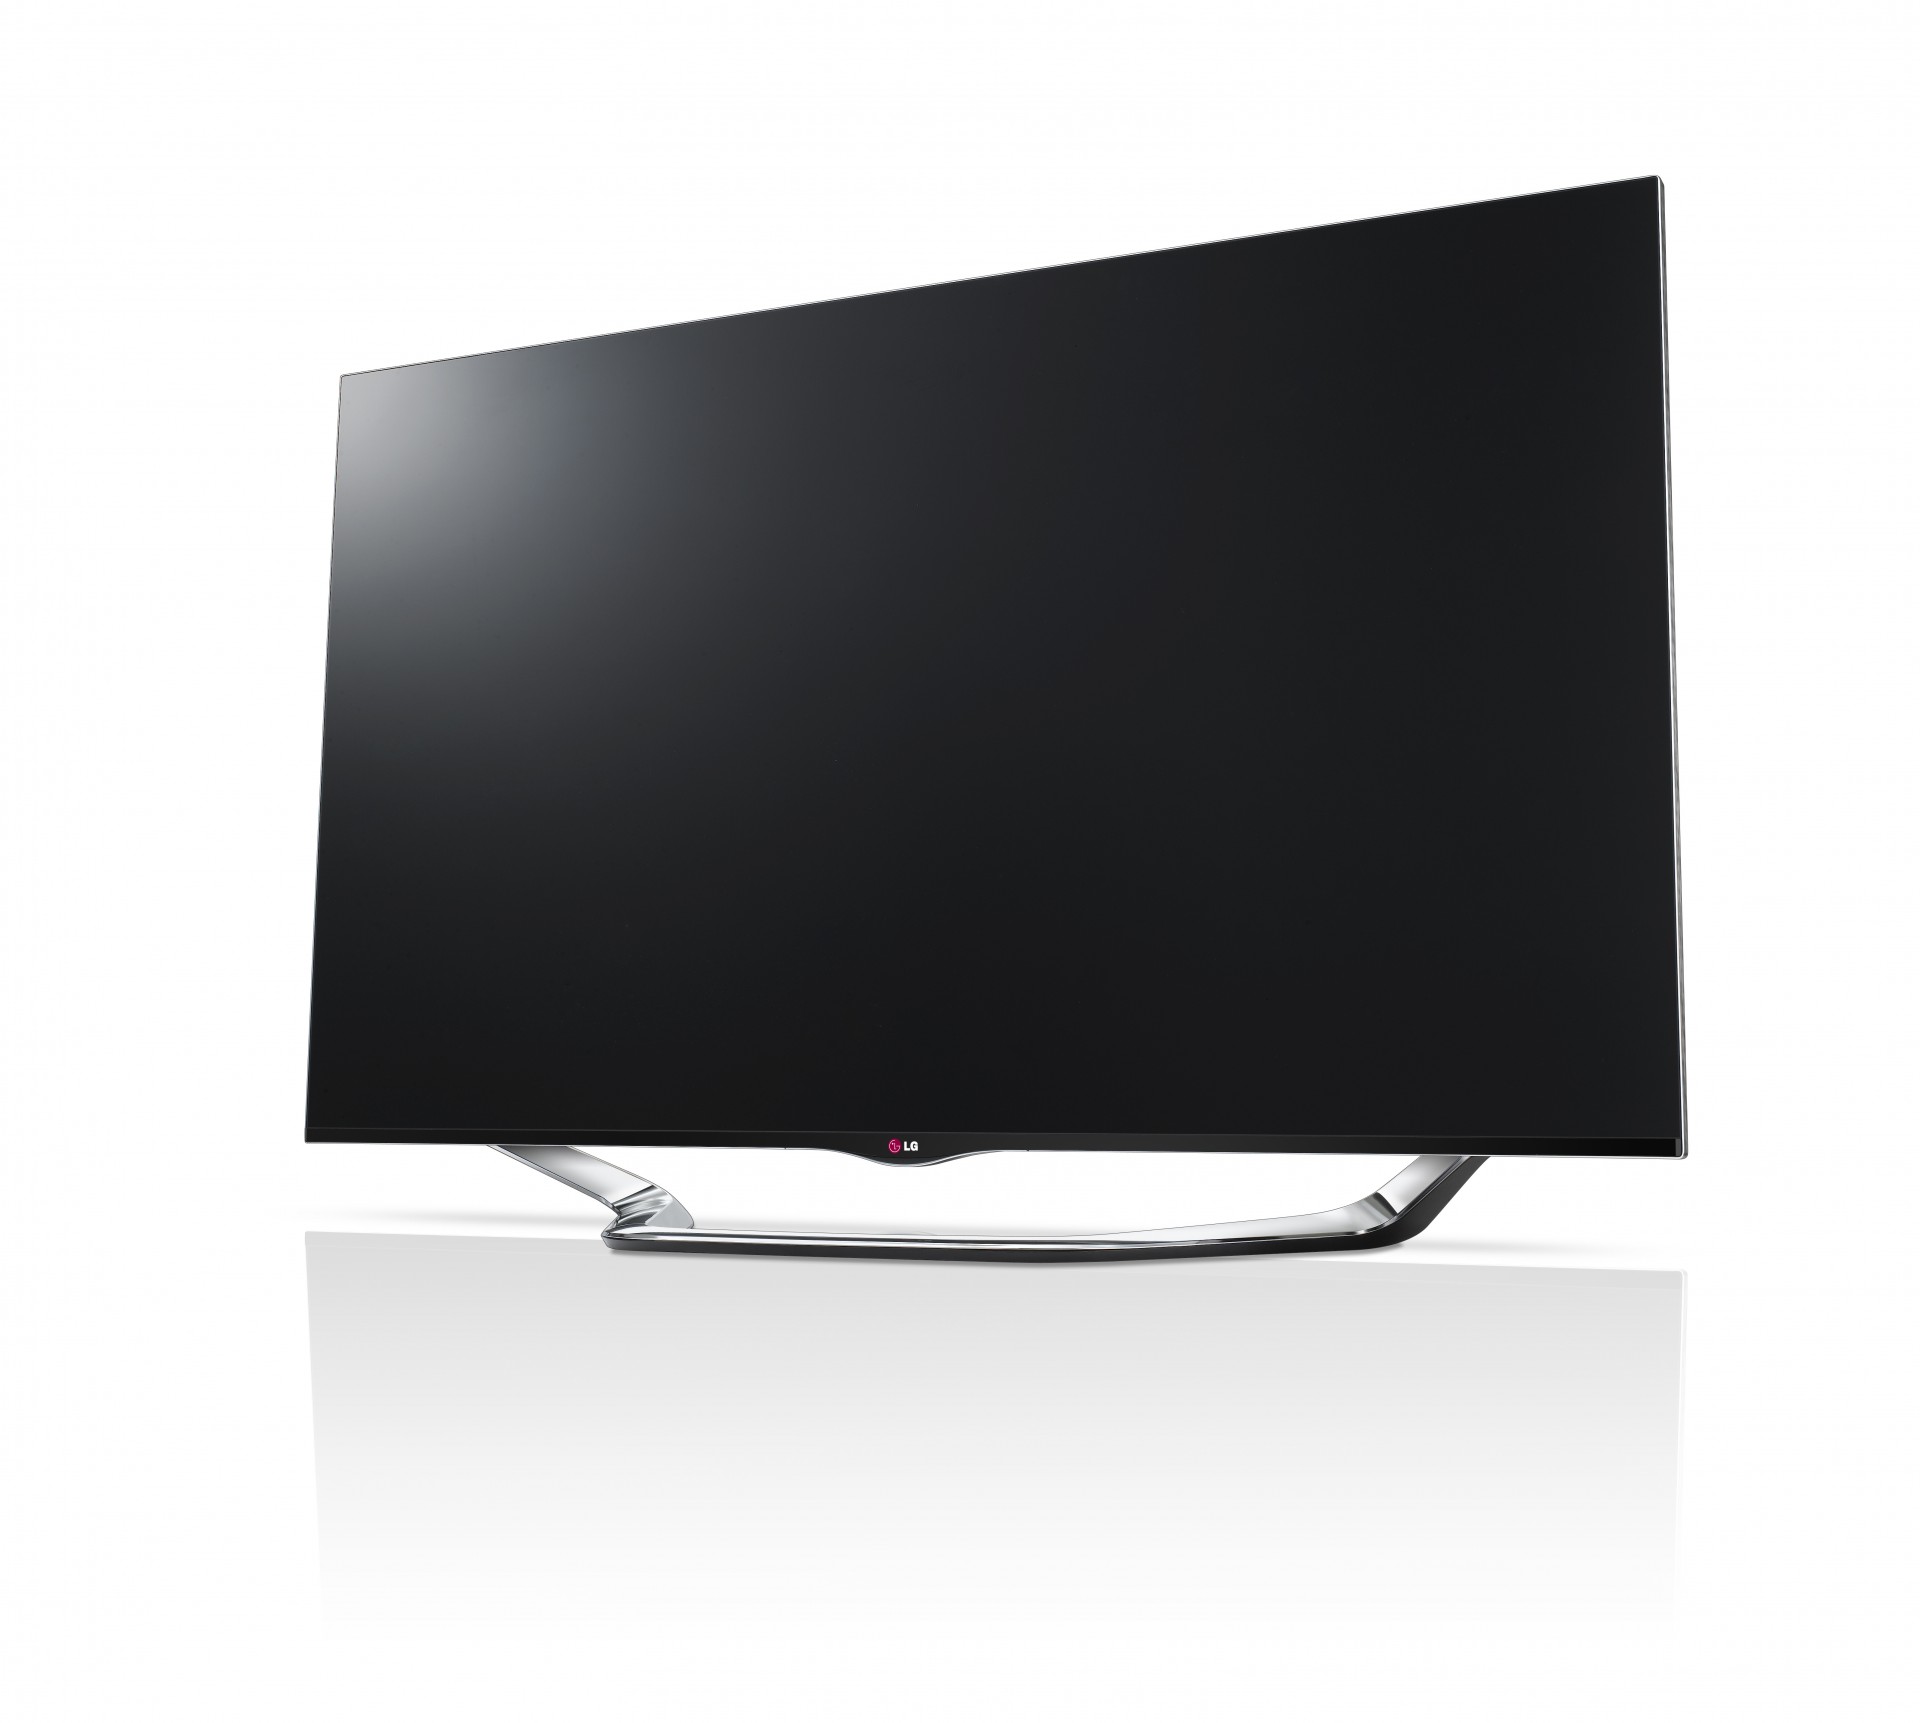 LG 55 PULGADAS CINEMA 3D SMART TV LA8600